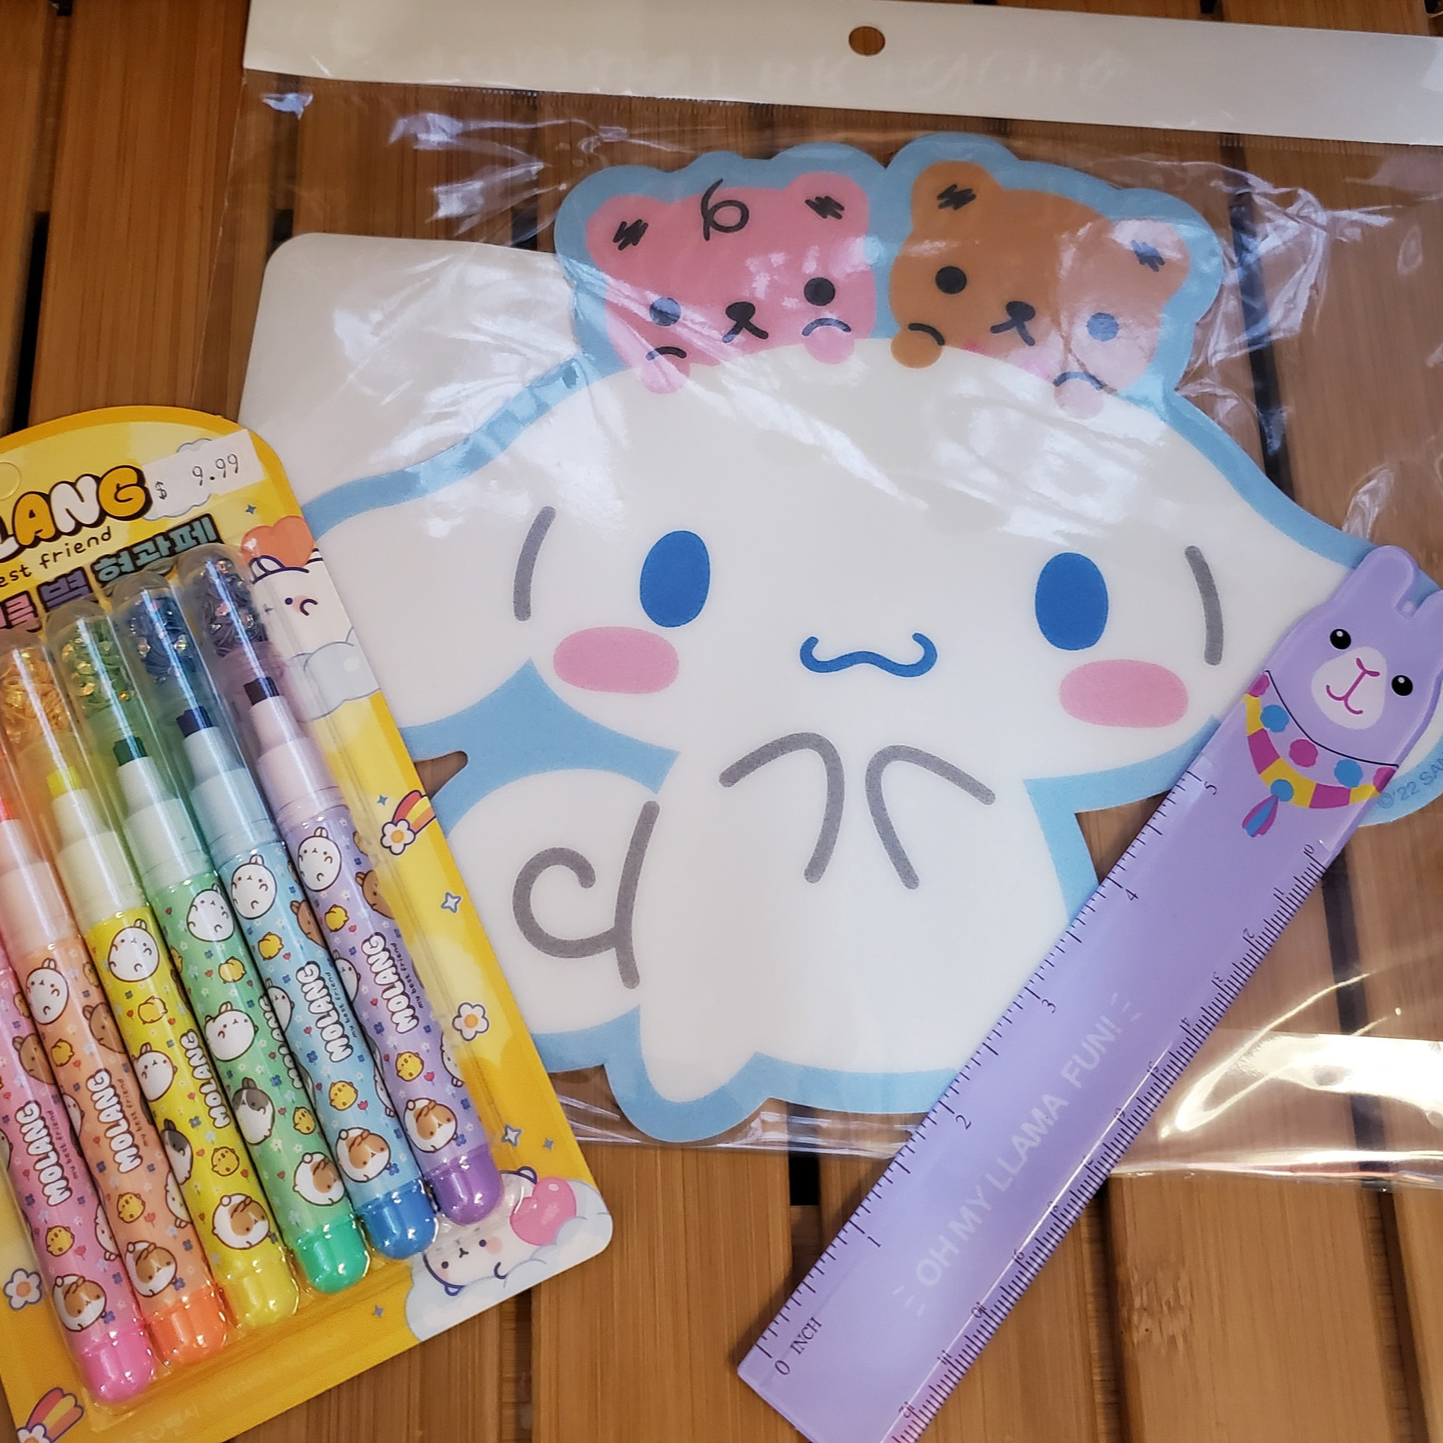 Hello Kitty Glitter Scented Putty Eraser – JapanLA